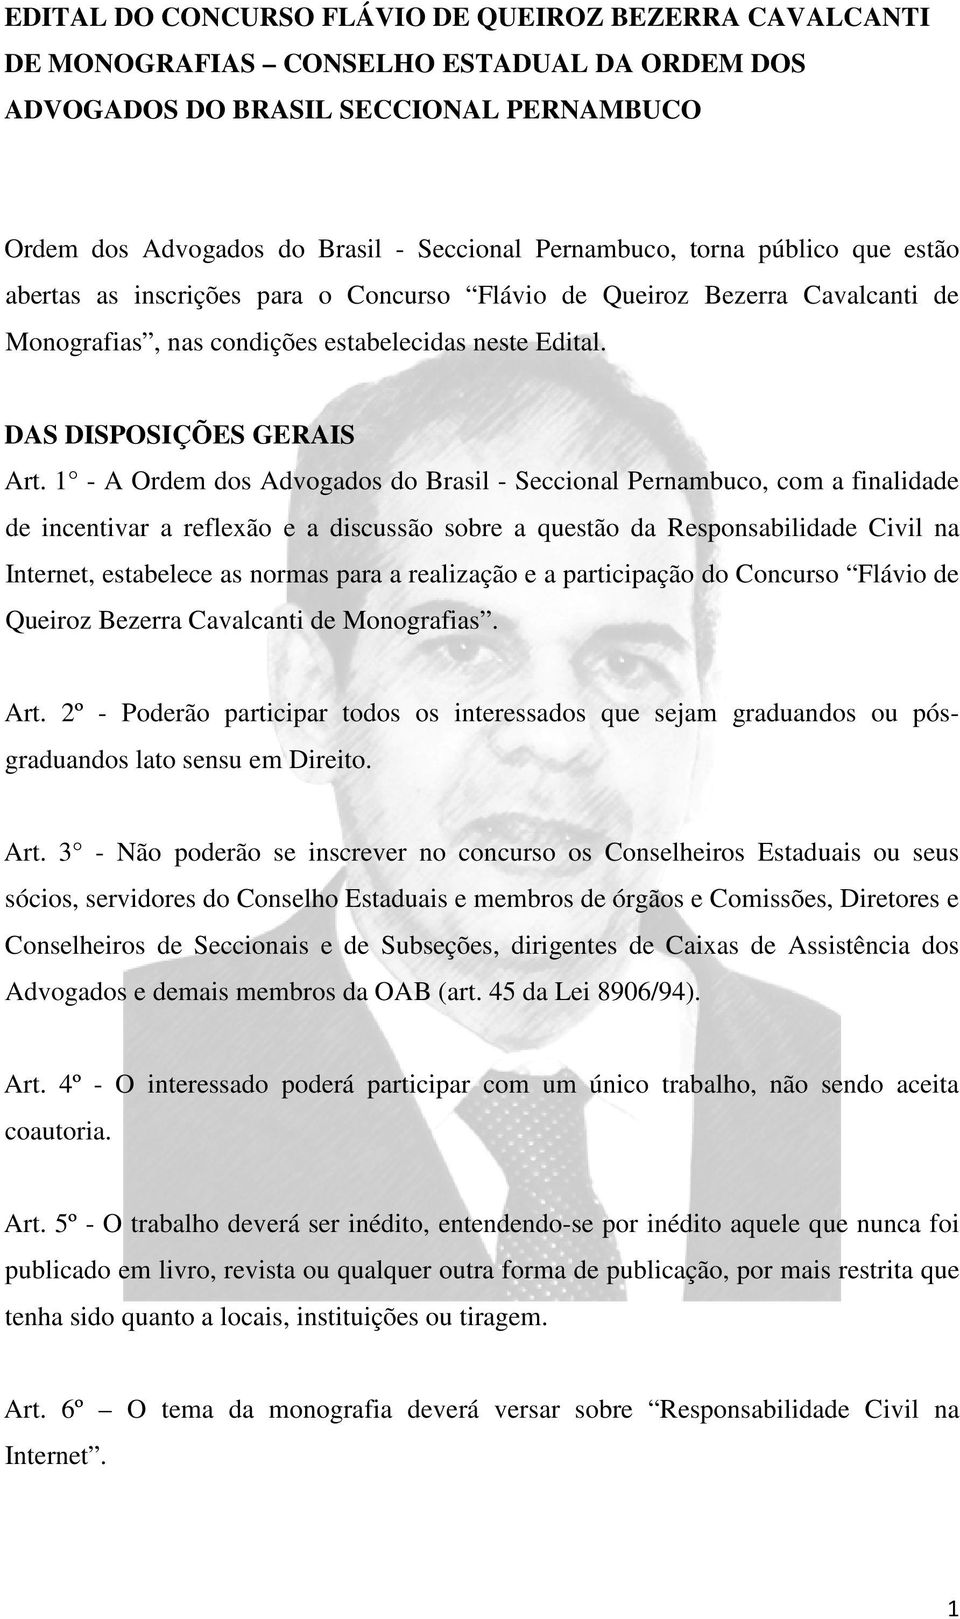 1 - A Ordem dos Advogados do Brasil - Seccional Pernambuco, com a finalidade de incentivar a reflexão e a discussão sobre a questão da Responsabilidade Civil na Internet, estabelece as normas para a